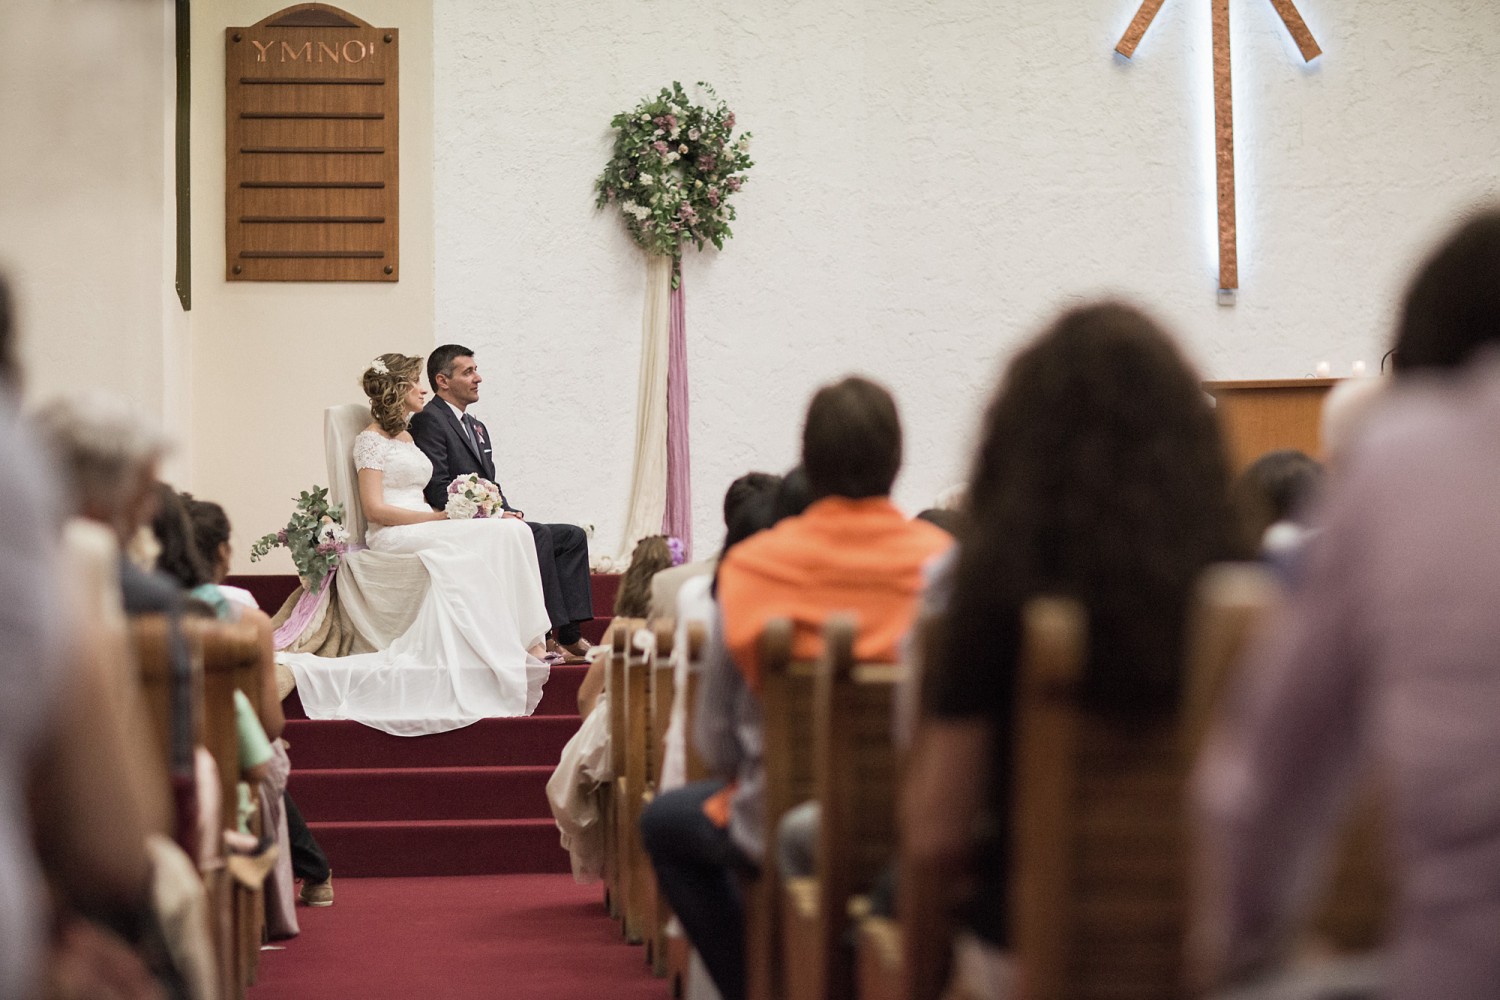 Φωτογράφιες ευαγγελικού γάμου -  Μάκης και Δήμητρα